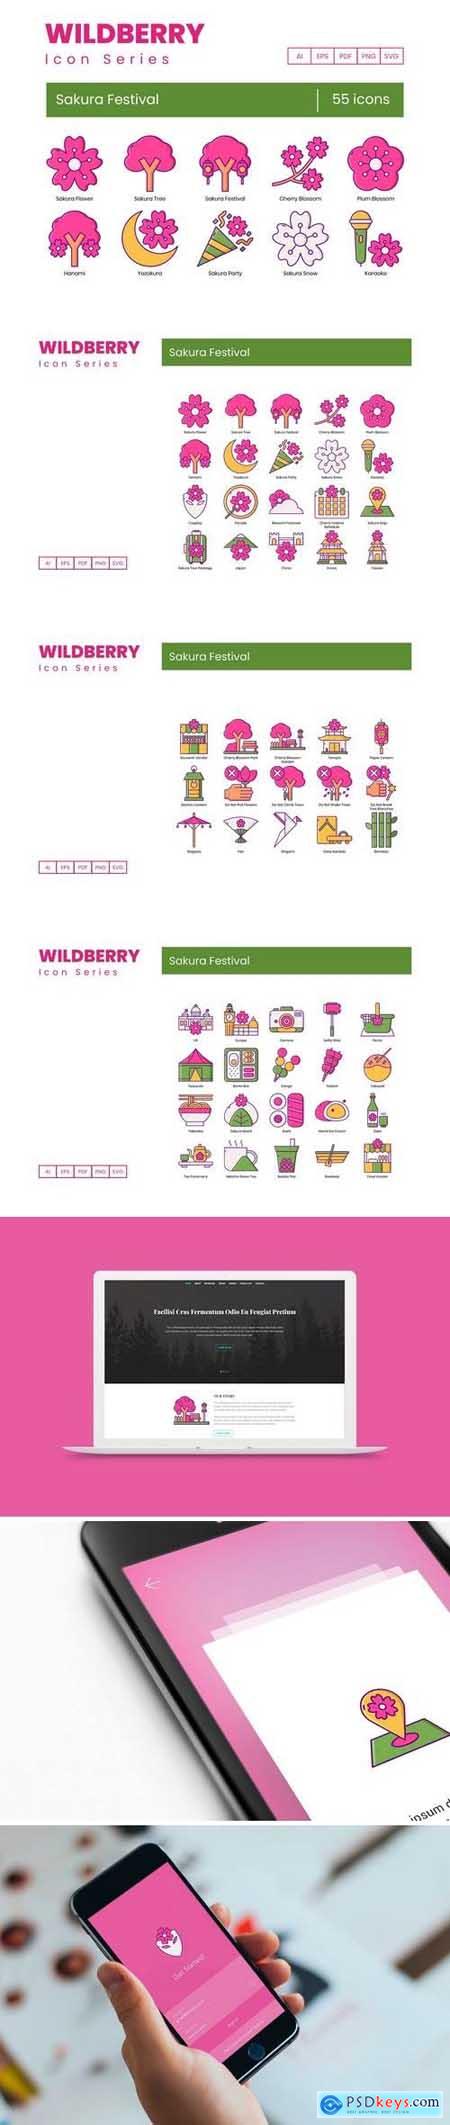 55 Sakura Festival Icons Wildberry Series